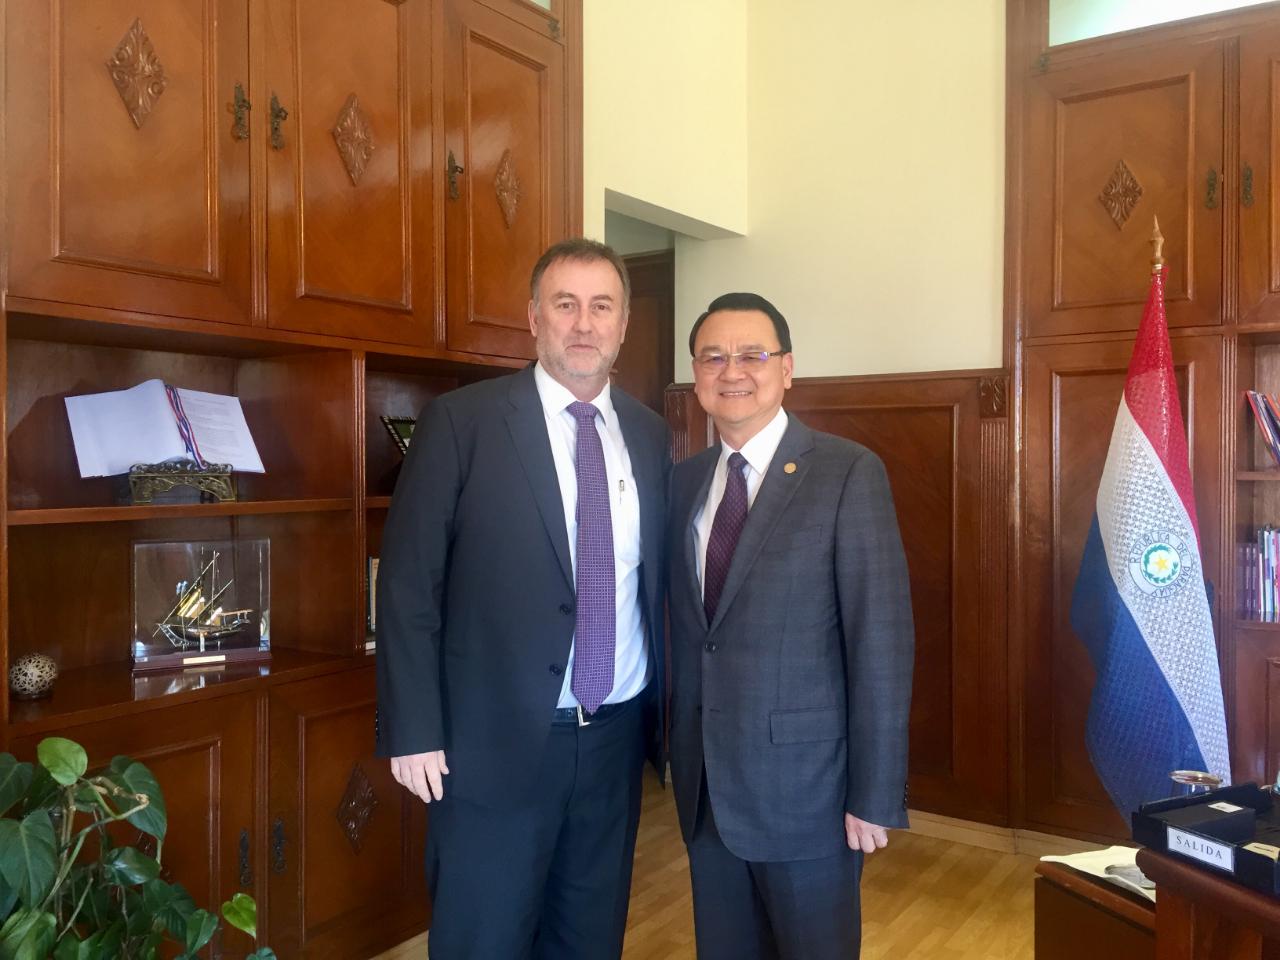 El Embajador de la República de China (Taiwán), Dr. Diego L. Chou, visitó al Ministro de Hacienda, Benigno López el día 7 de septiembre, 2018.